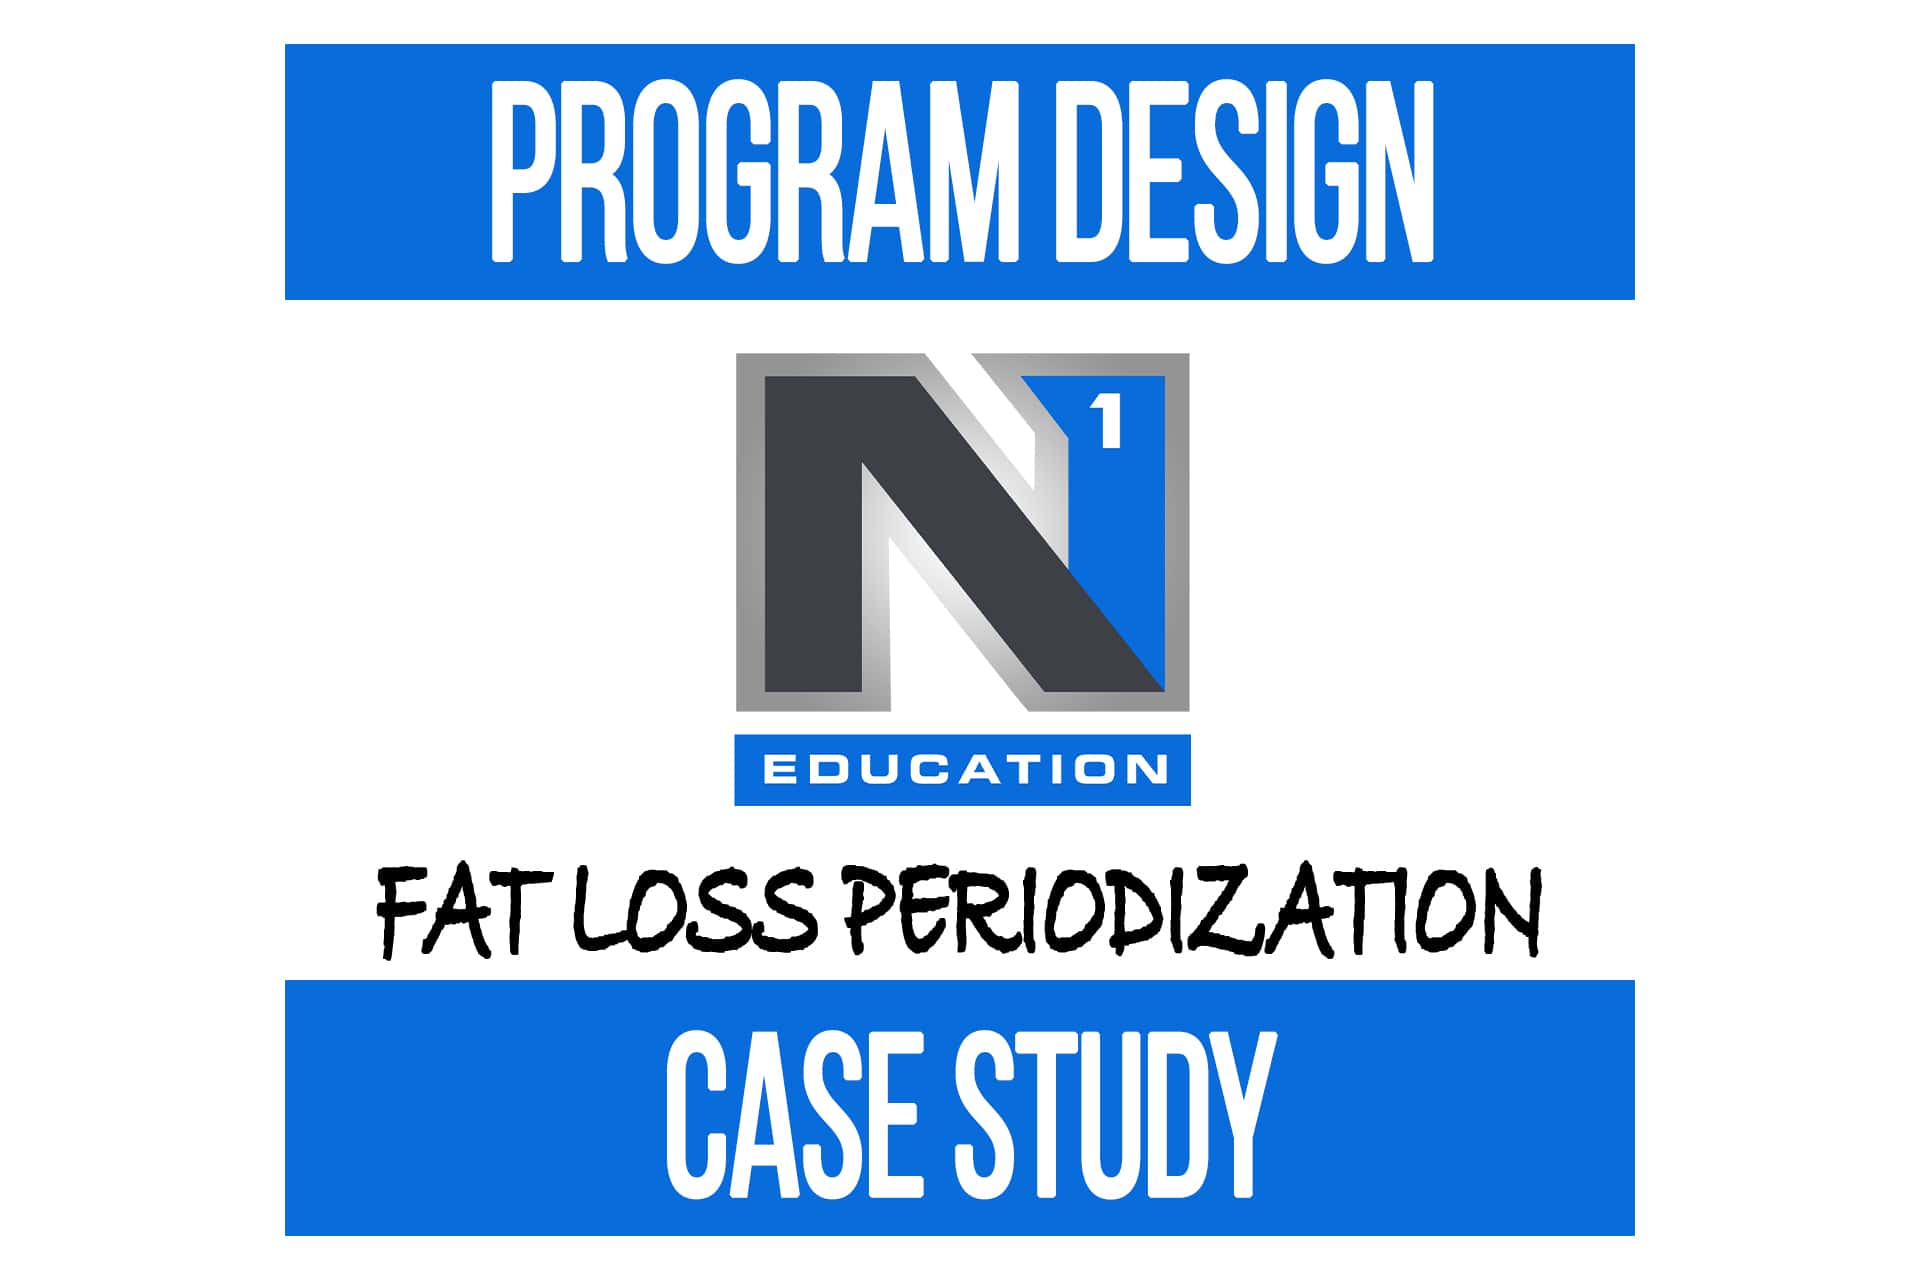 Program Design Case Study: Fat Loss Periodization